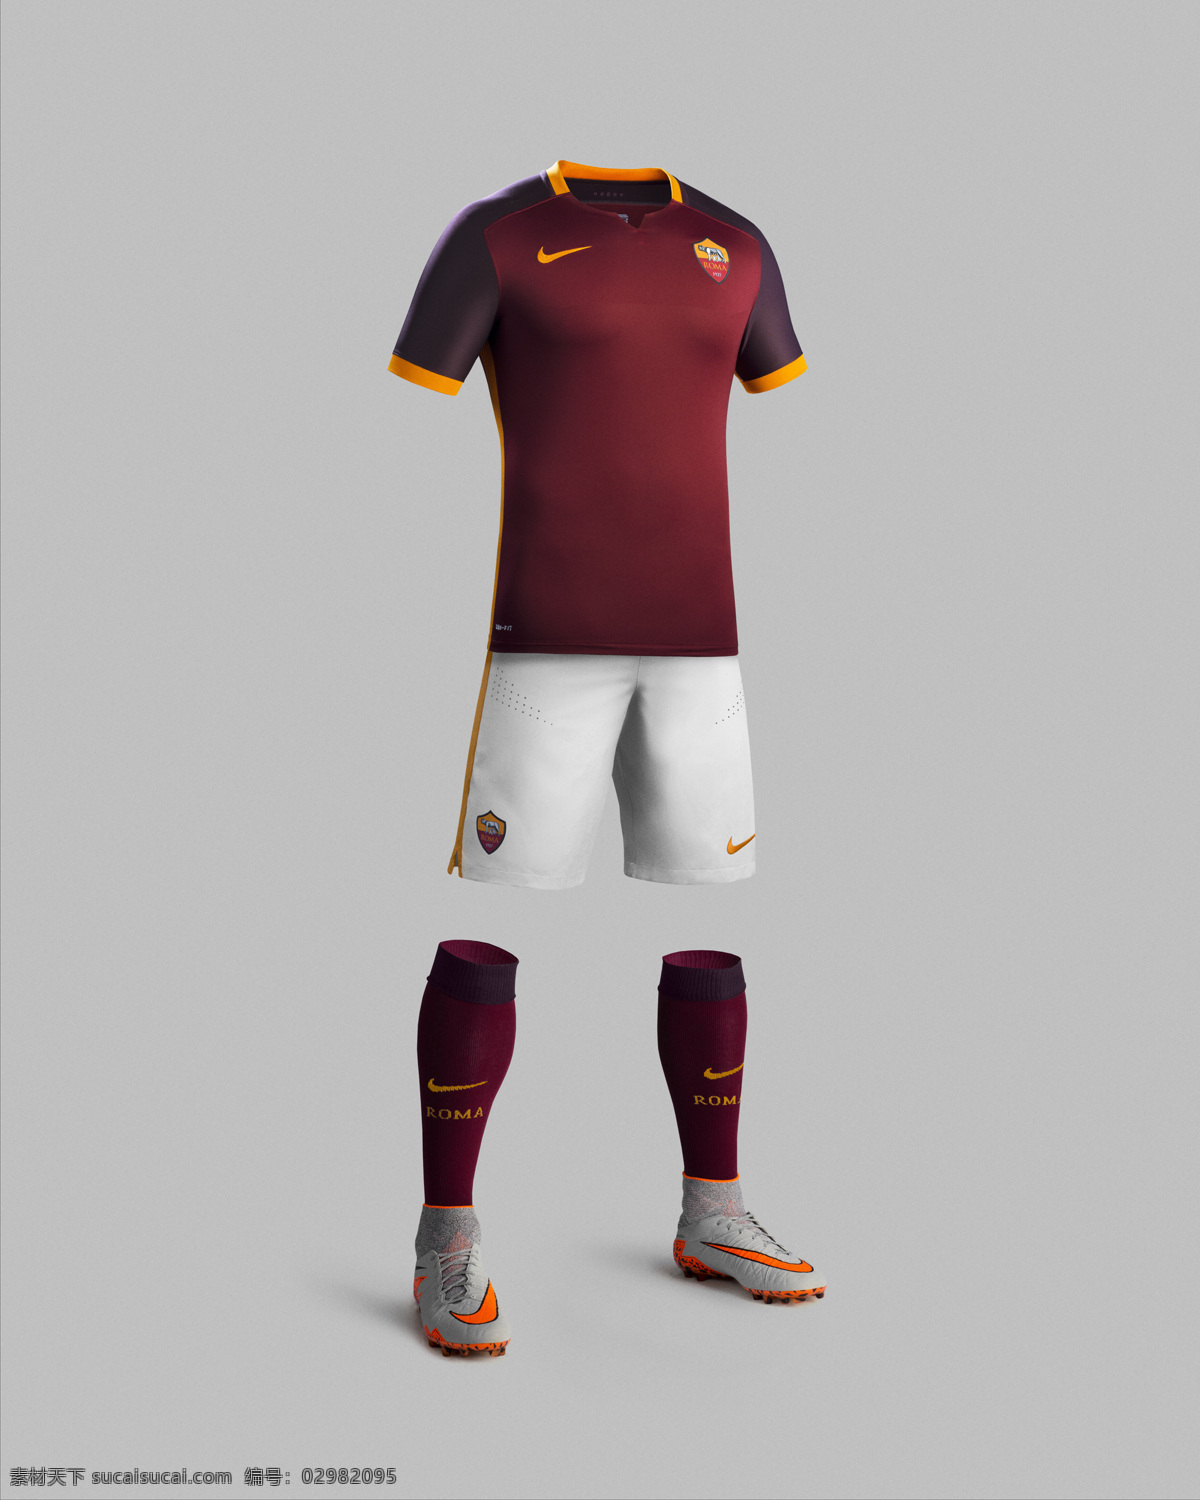 罗马队服广告 nike 罗马 足球俱乐部 队服 装备 宣传 广告 文化艺术 体育运动